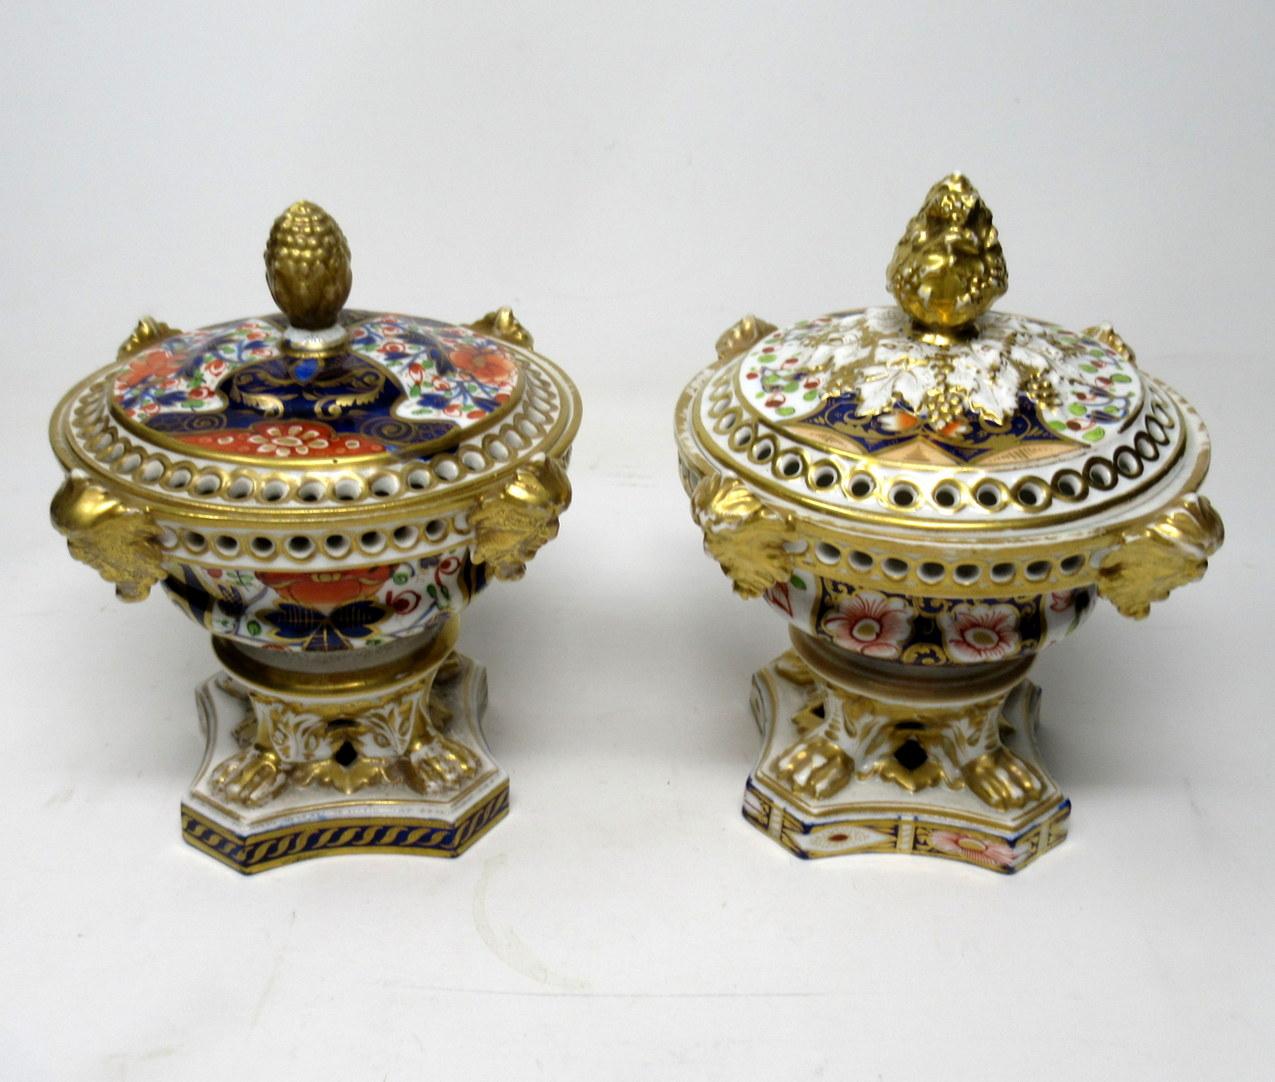 19th Century Antique Regency English Crown Derby Pair Urns Vases Pot Pourri Centerpieces